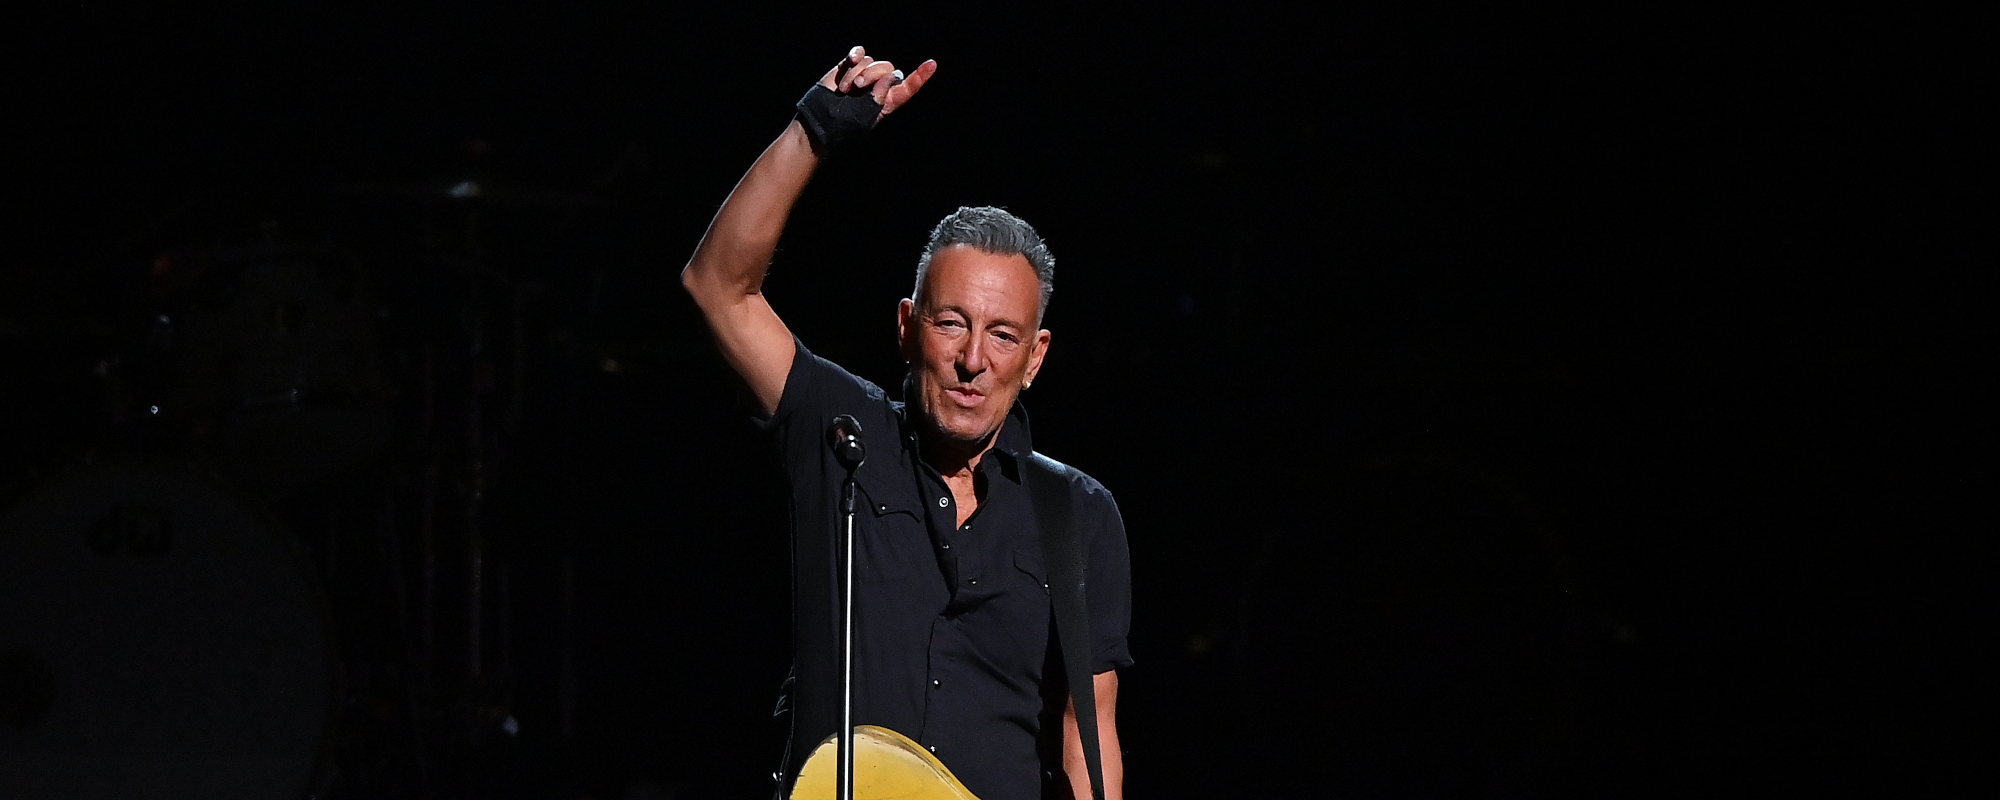 Bruce Springsteen écrit une nouvelle chanson "Addicted to Romance" pour la nouvelle comédie romantique "She Came to Me"